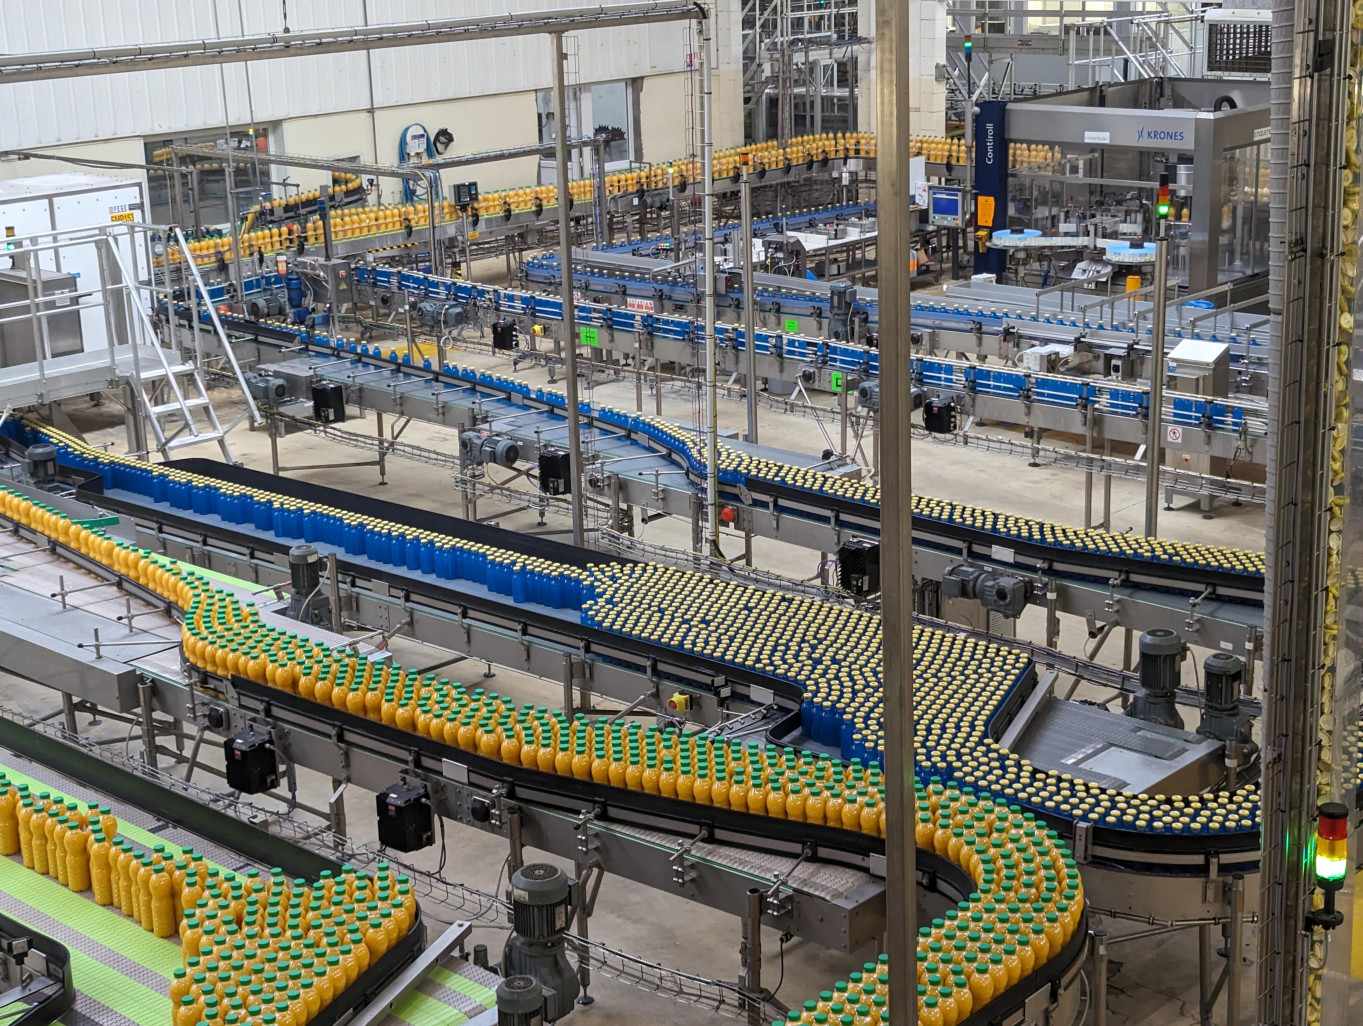 Refresco s’appuie sur deux lignes de production, une pour les contenants en verre et l’autre pour les contenants en plastique, pour produire 75 millions d’unités par an. (© Aletheia Press / Nadège Hubert)